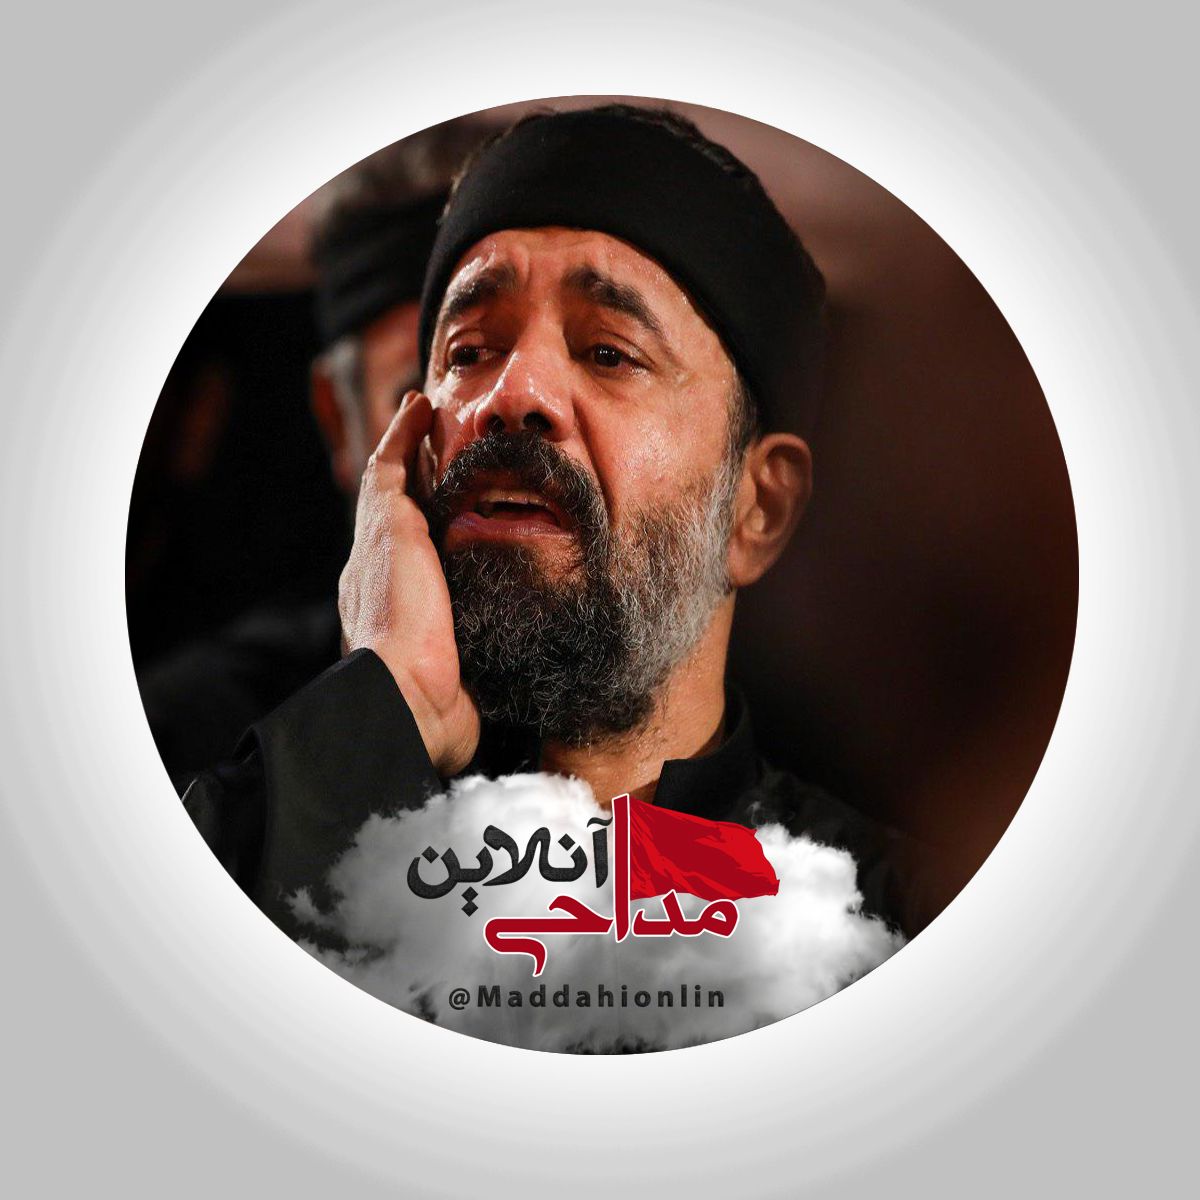 نسیم به پرچم می خوره محمود کریمی